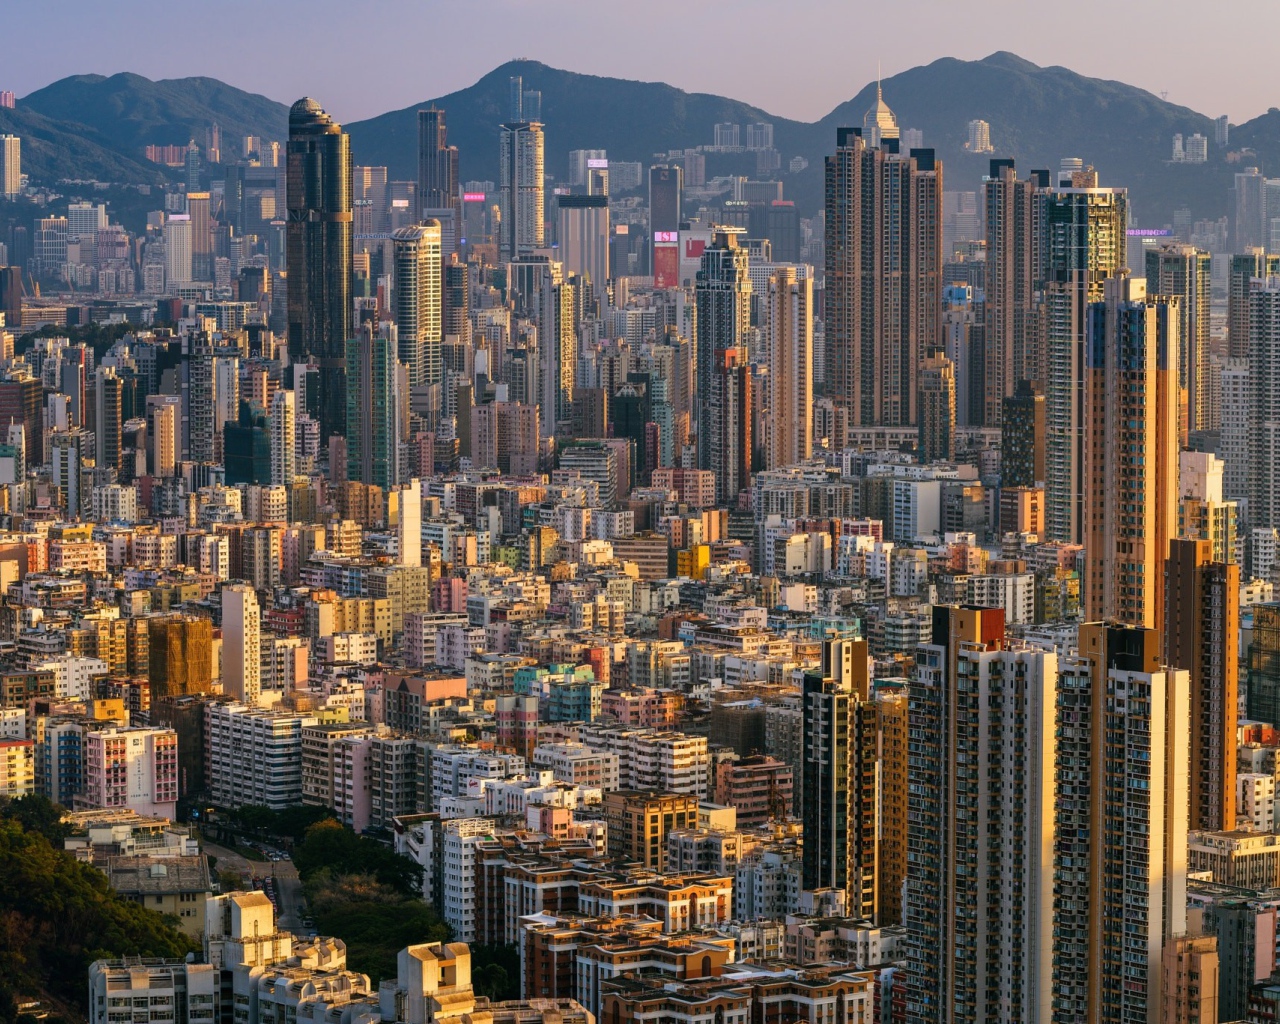 Panorama of Hong Kong, China